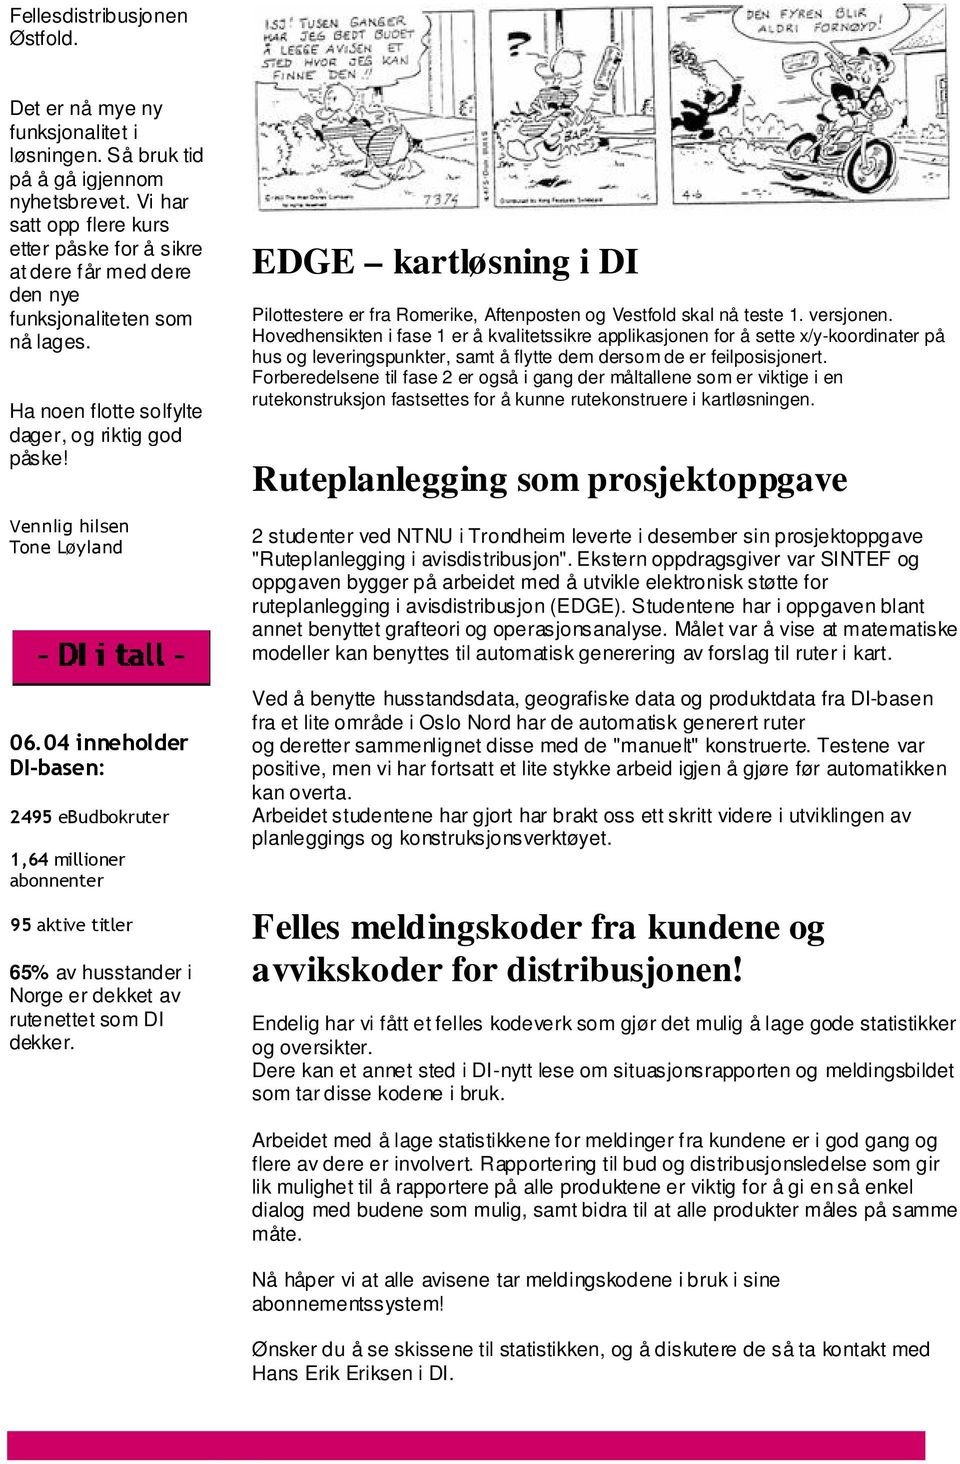 65% av husstander i Norge er dekket av rutenettet som DI dekker. EDGE kartløsning i DI Pilottestere er fra Romerike, Aftenposten og Vestfold skal nå teste 1. versjonen.